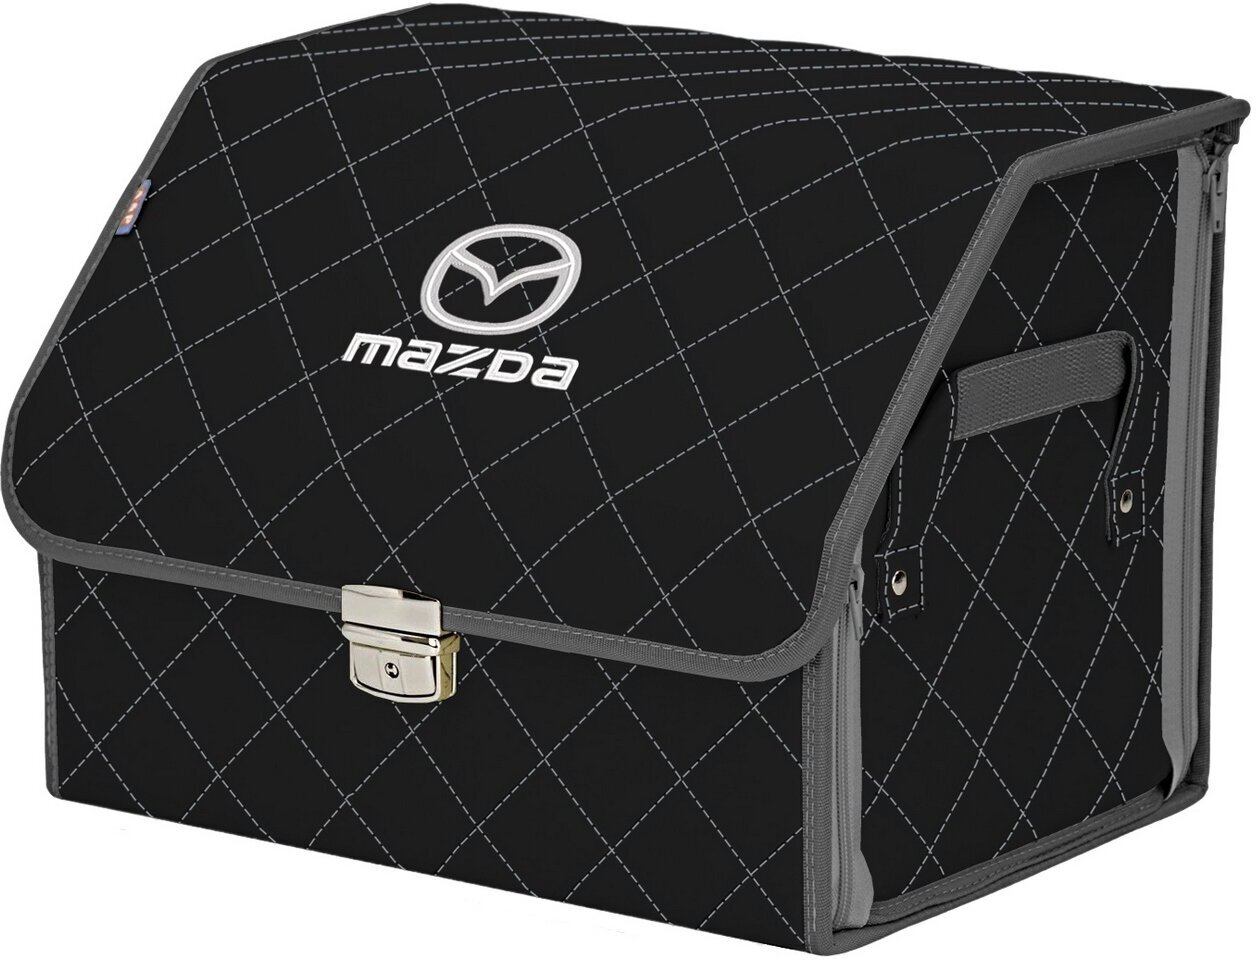 Органайзер-саквояж в багажник "Союз Премиум" (размер M). Цвет: черный с серой прострочкой Ромб и вышивкой Mazda (Мазда).